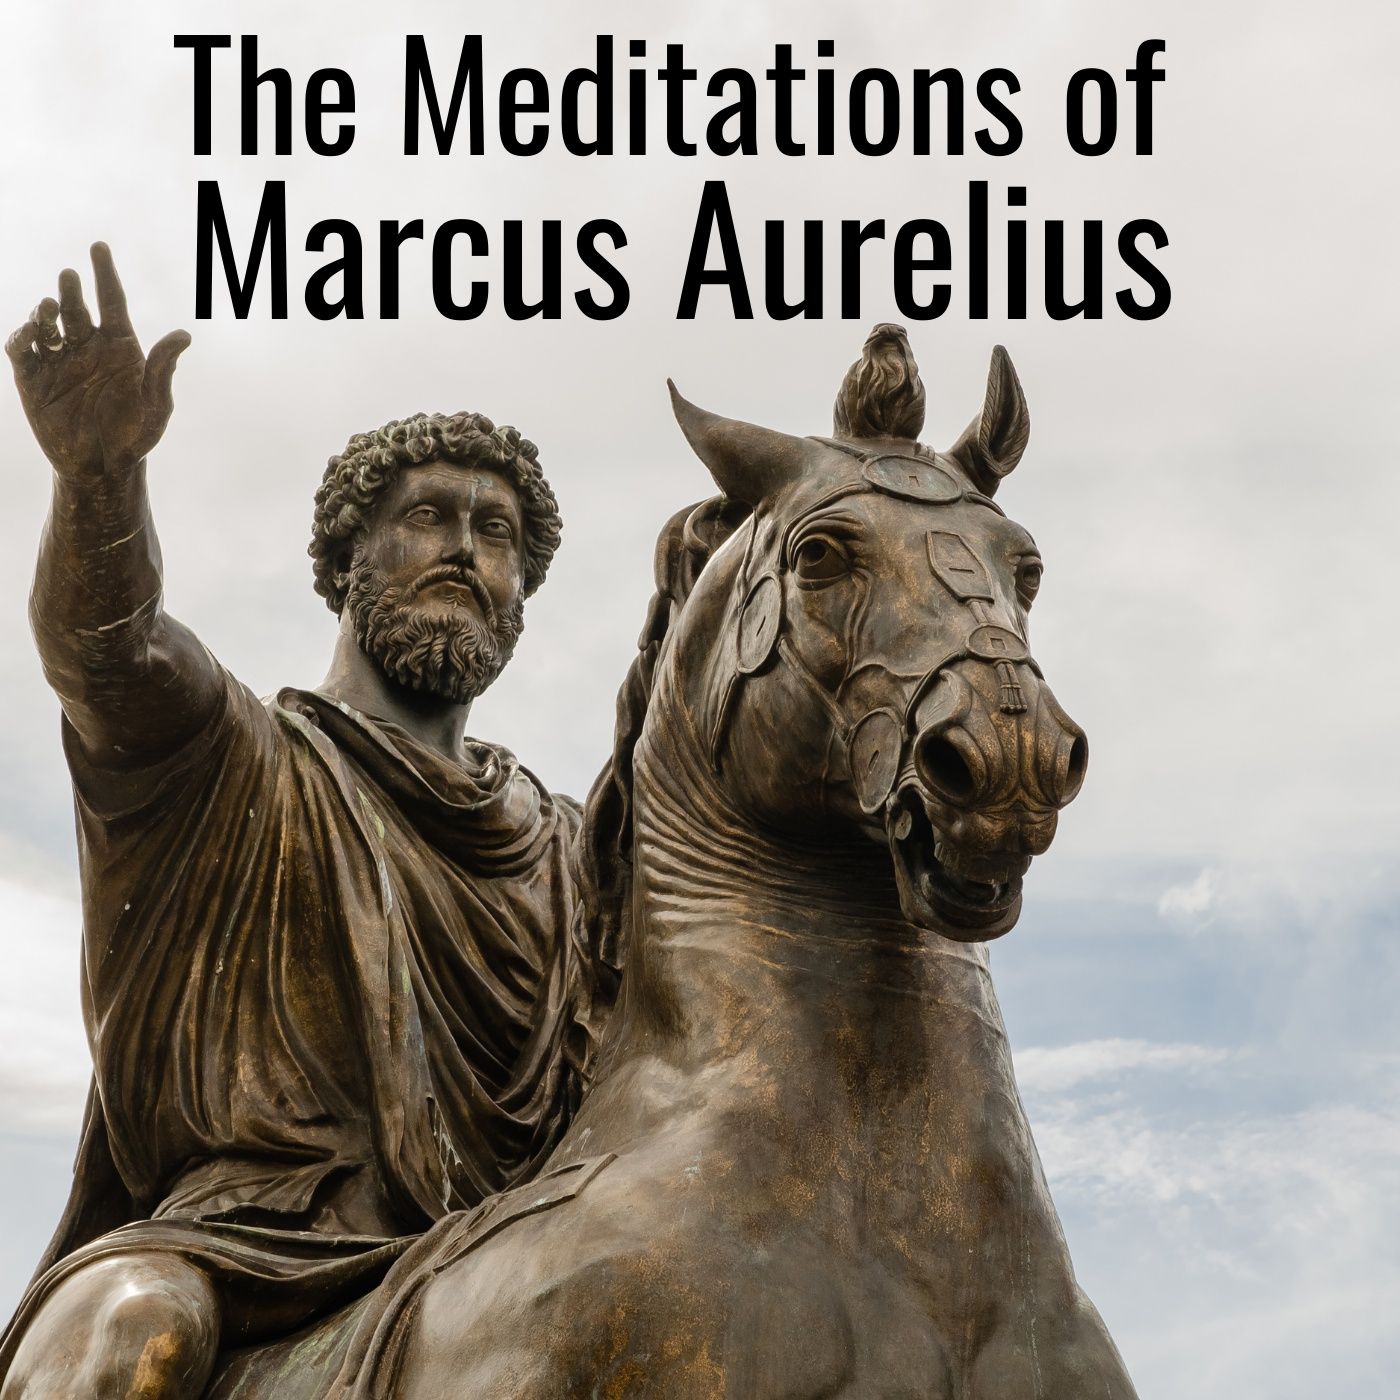 The Meditations of Marcus Aurelius Image